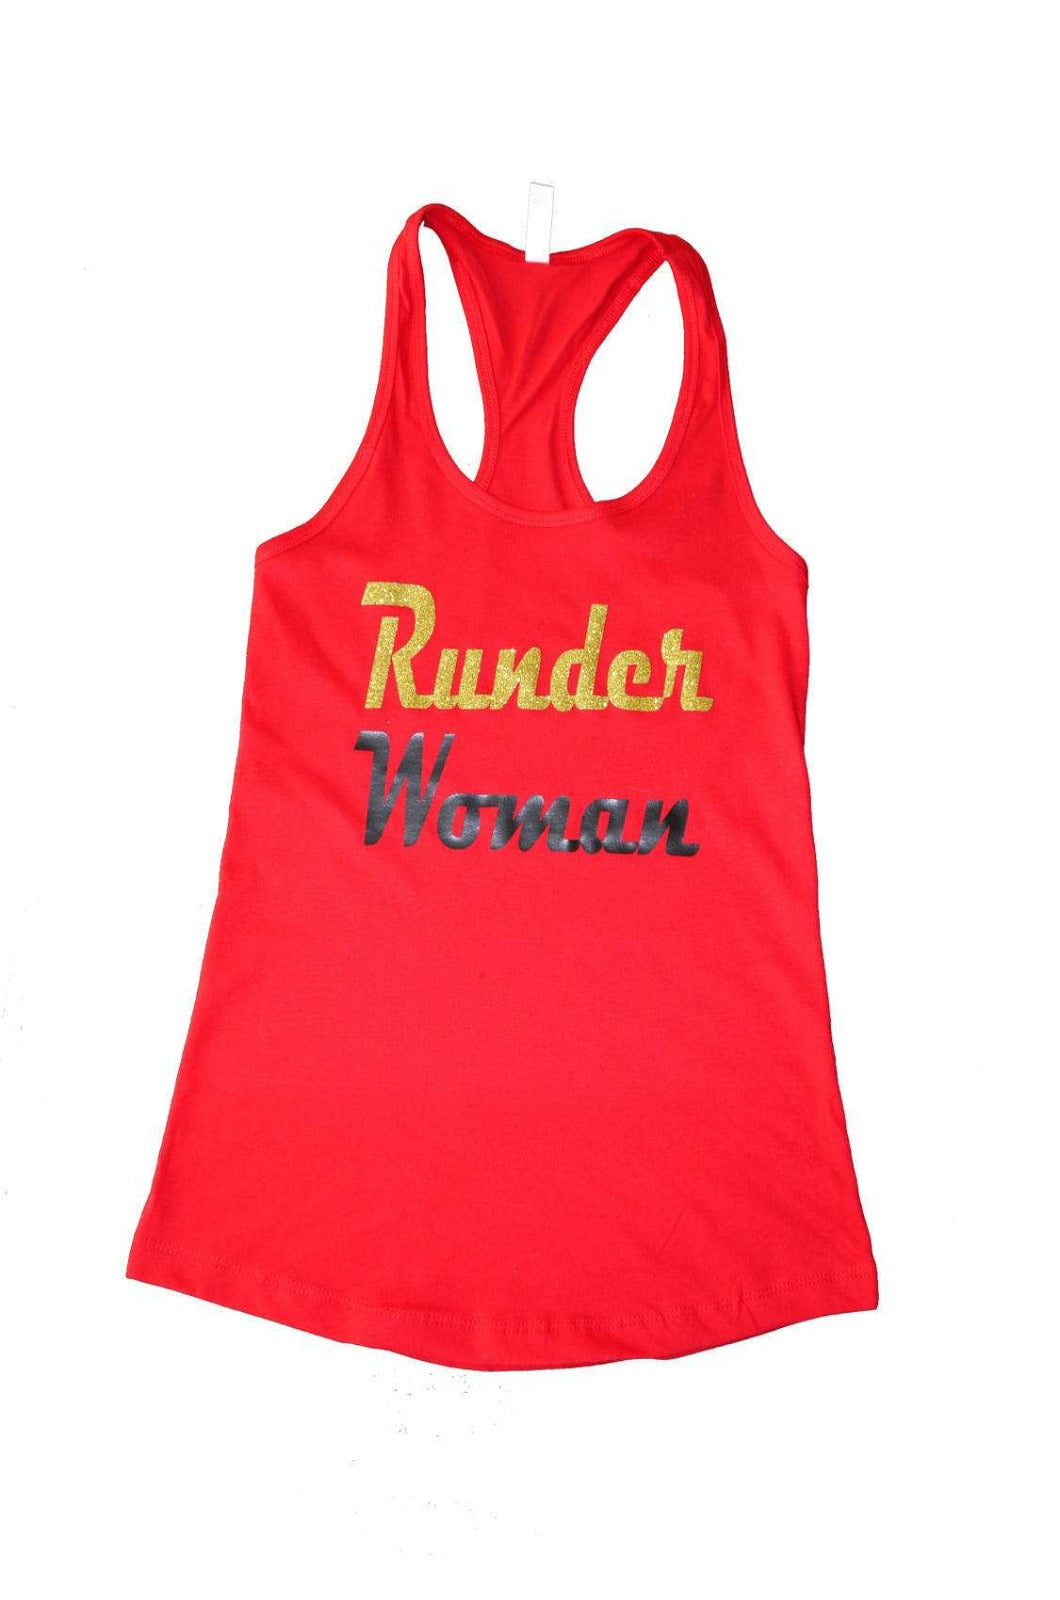 Runder Woman Shirt